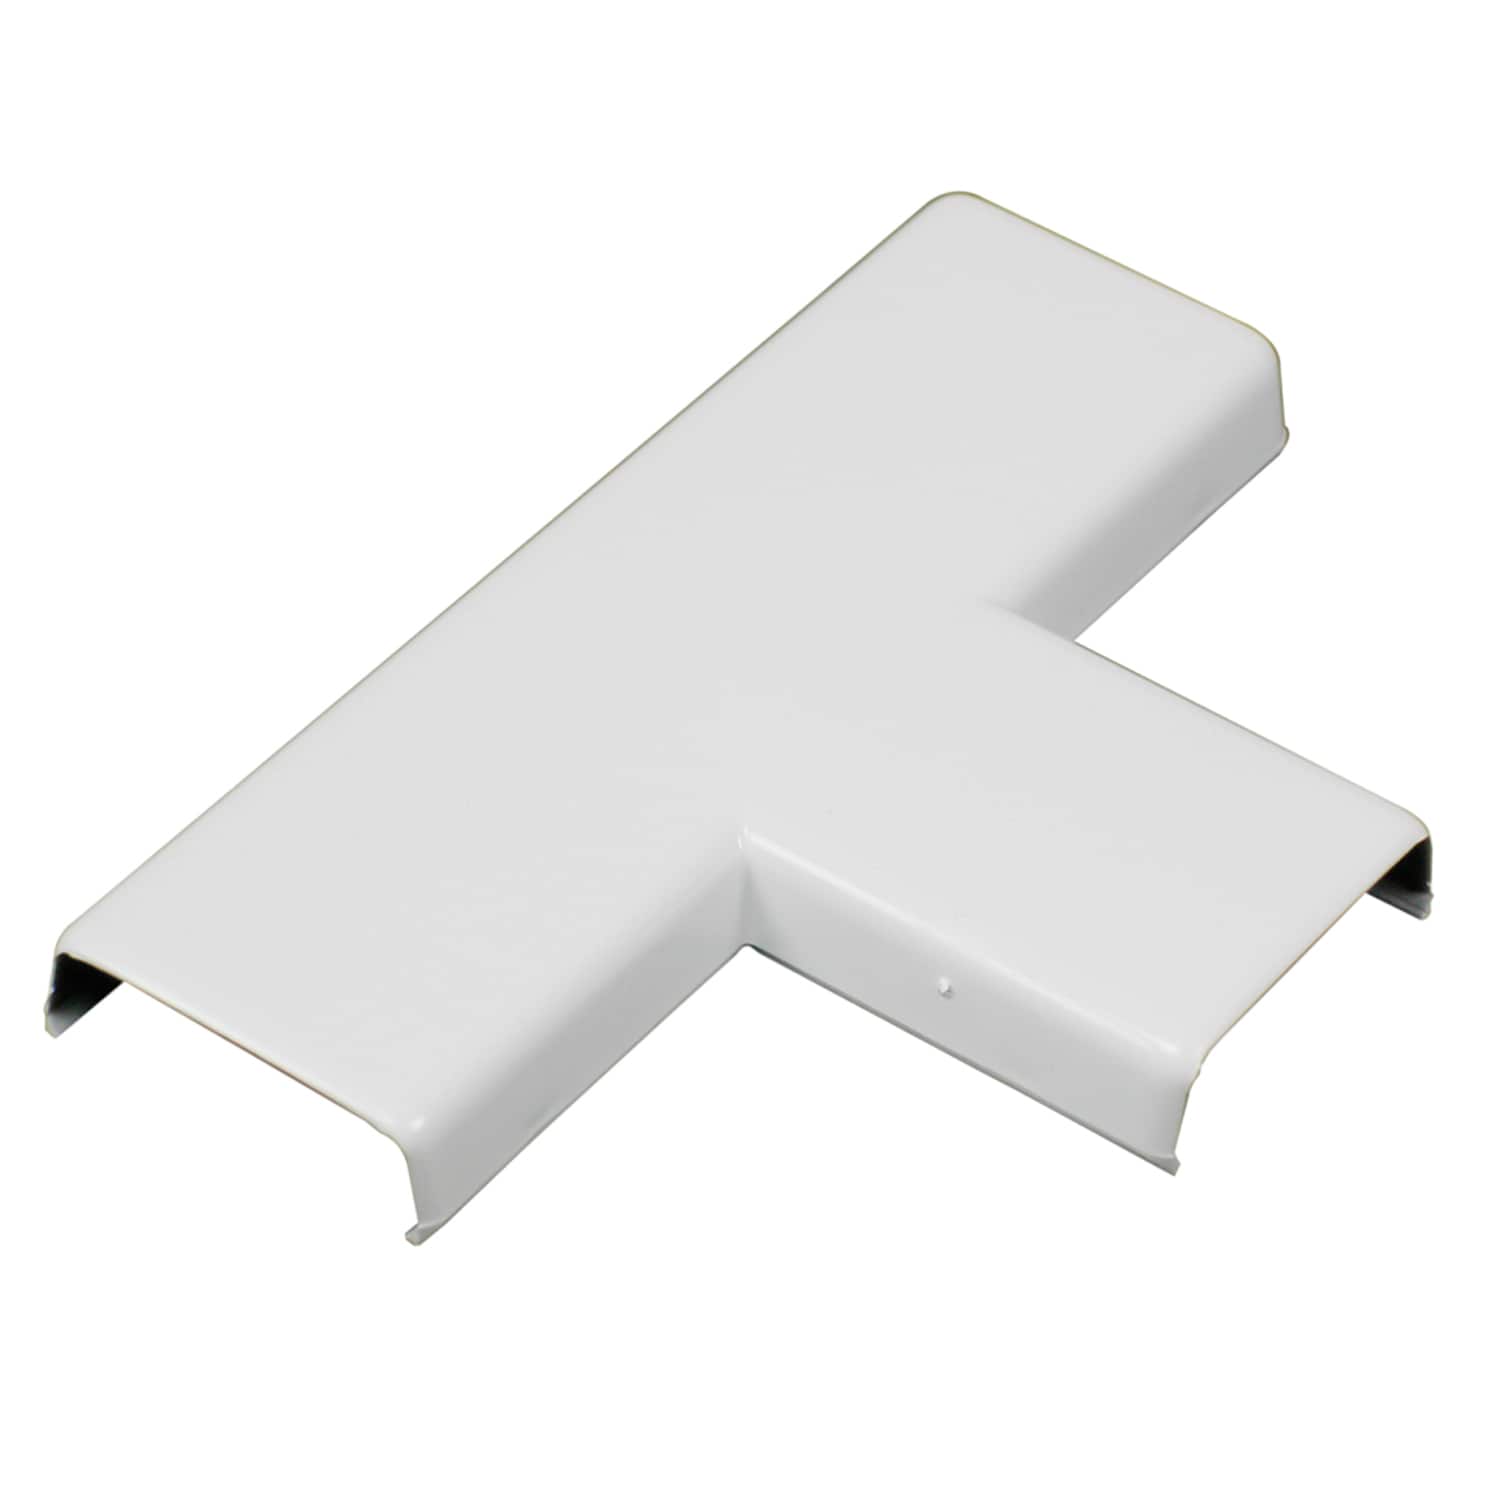 CordMate II Kit - White, Nonmetallic